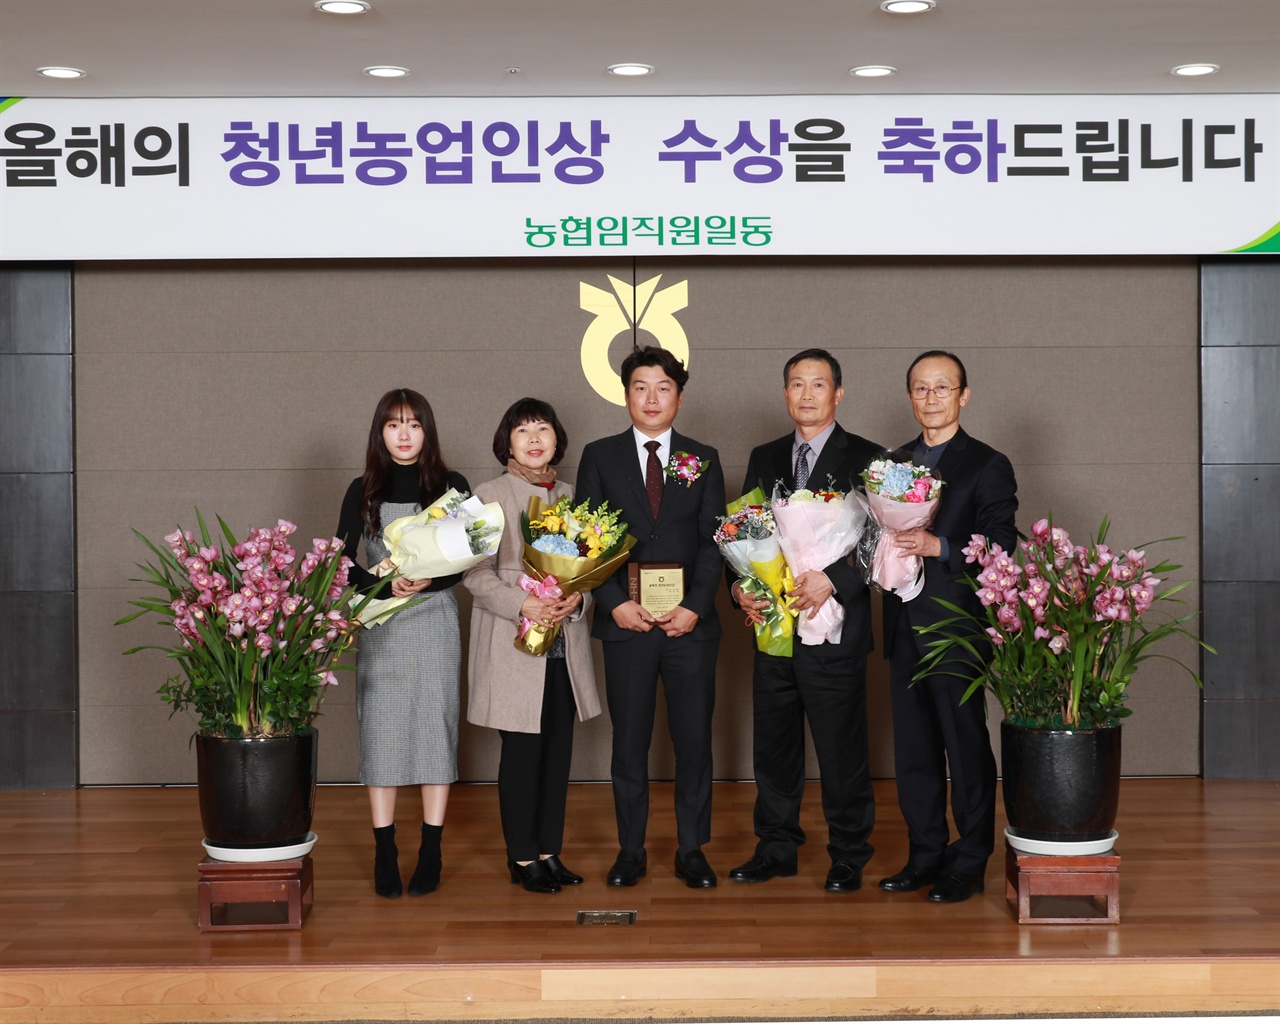 
▲ 박덕영 씨가 지난 2일 올해의 청년 농업인상을 수상한 가운데, 가족들과 기념사진을 찍고 있다.